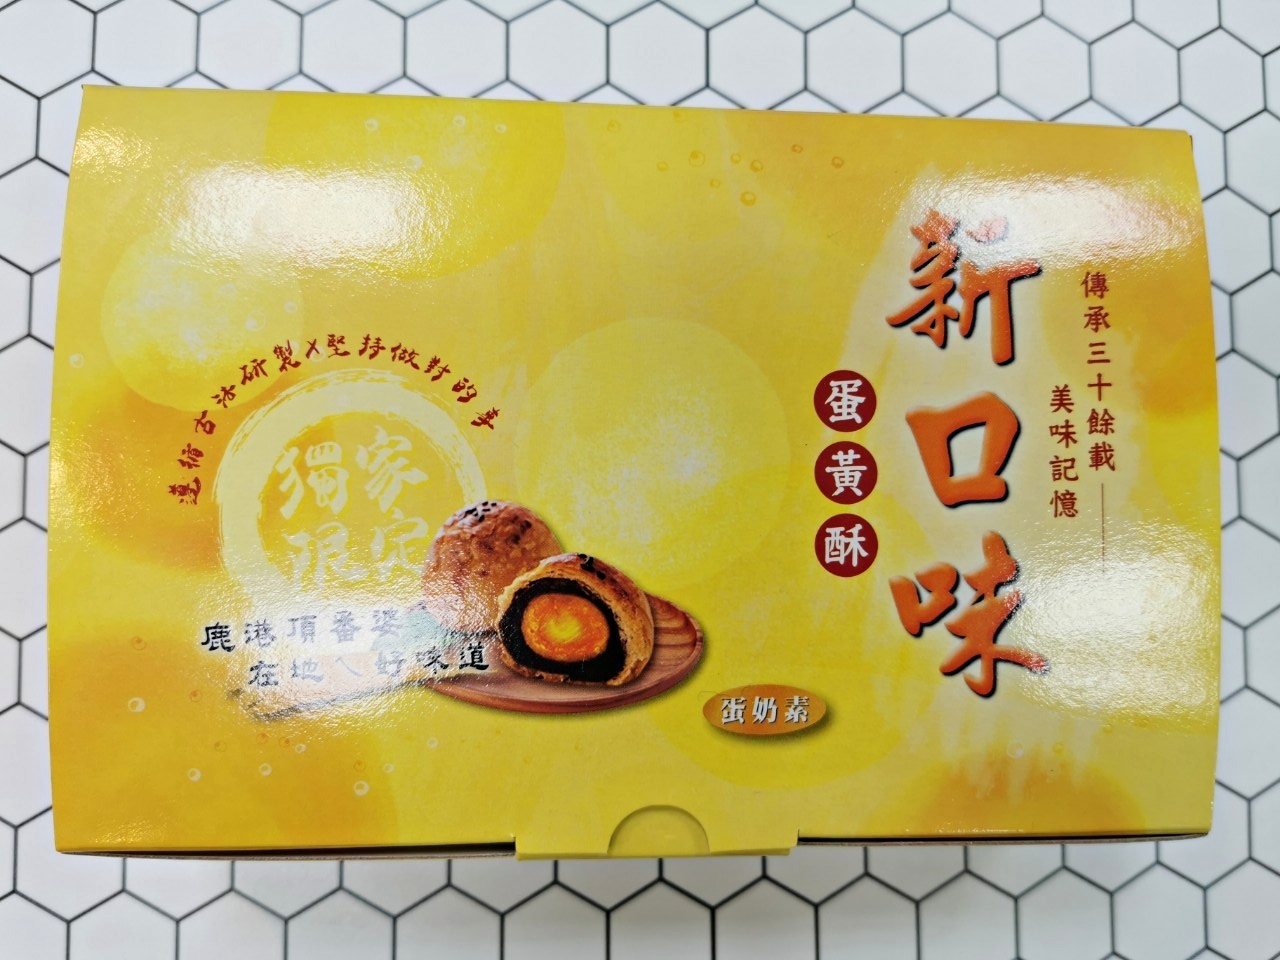 鹿港排隊的蛋黃酥「新口味蛋黃酥」， 這可是在地人才知道的隱藏美食